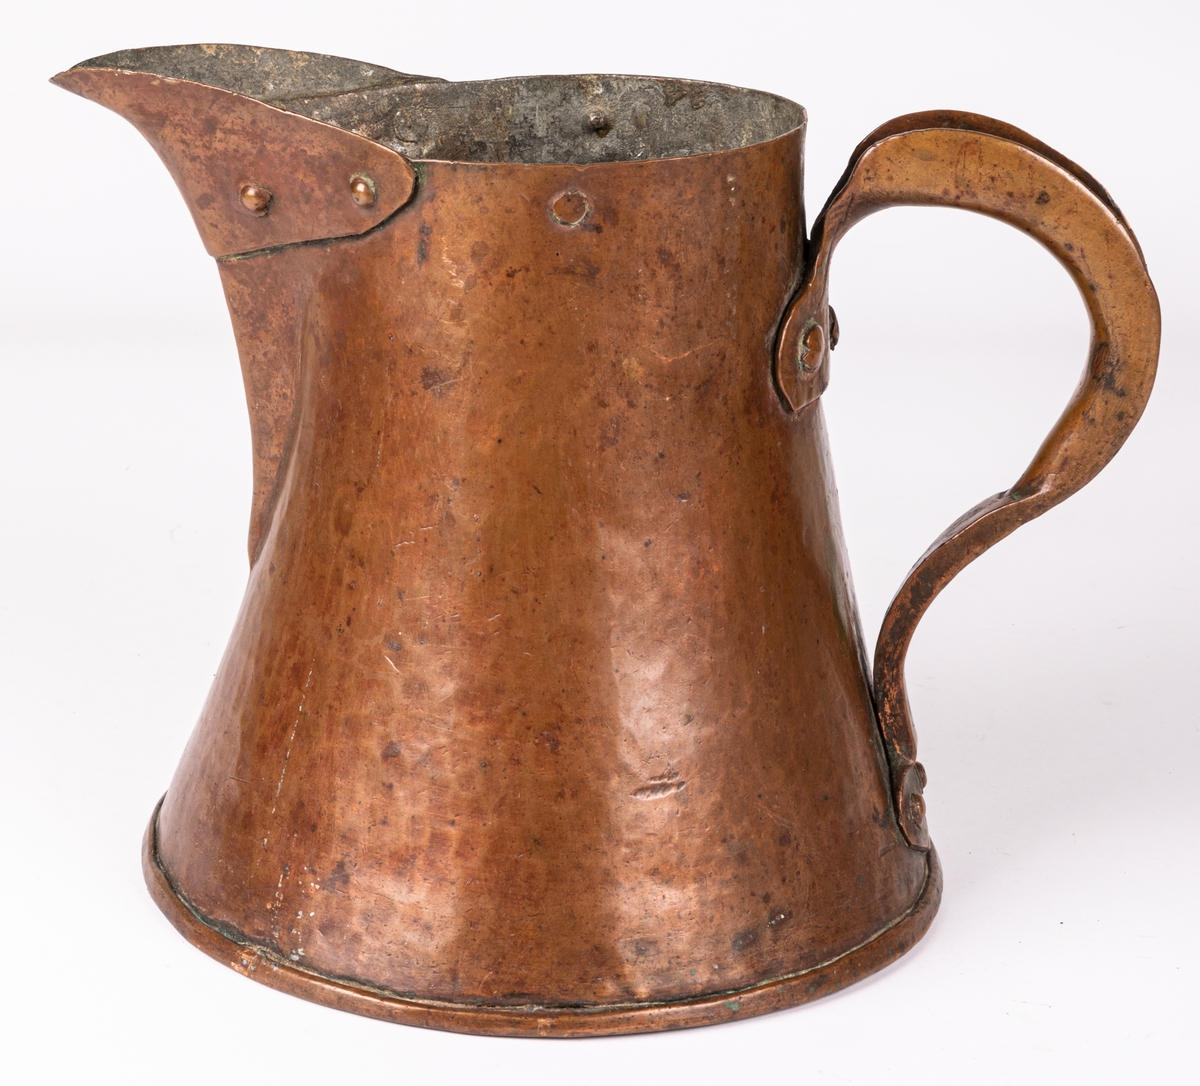 Brännvinsmått av koppar, koniskt, stort sprund, handtag. Märkt 1772 eller 1779.